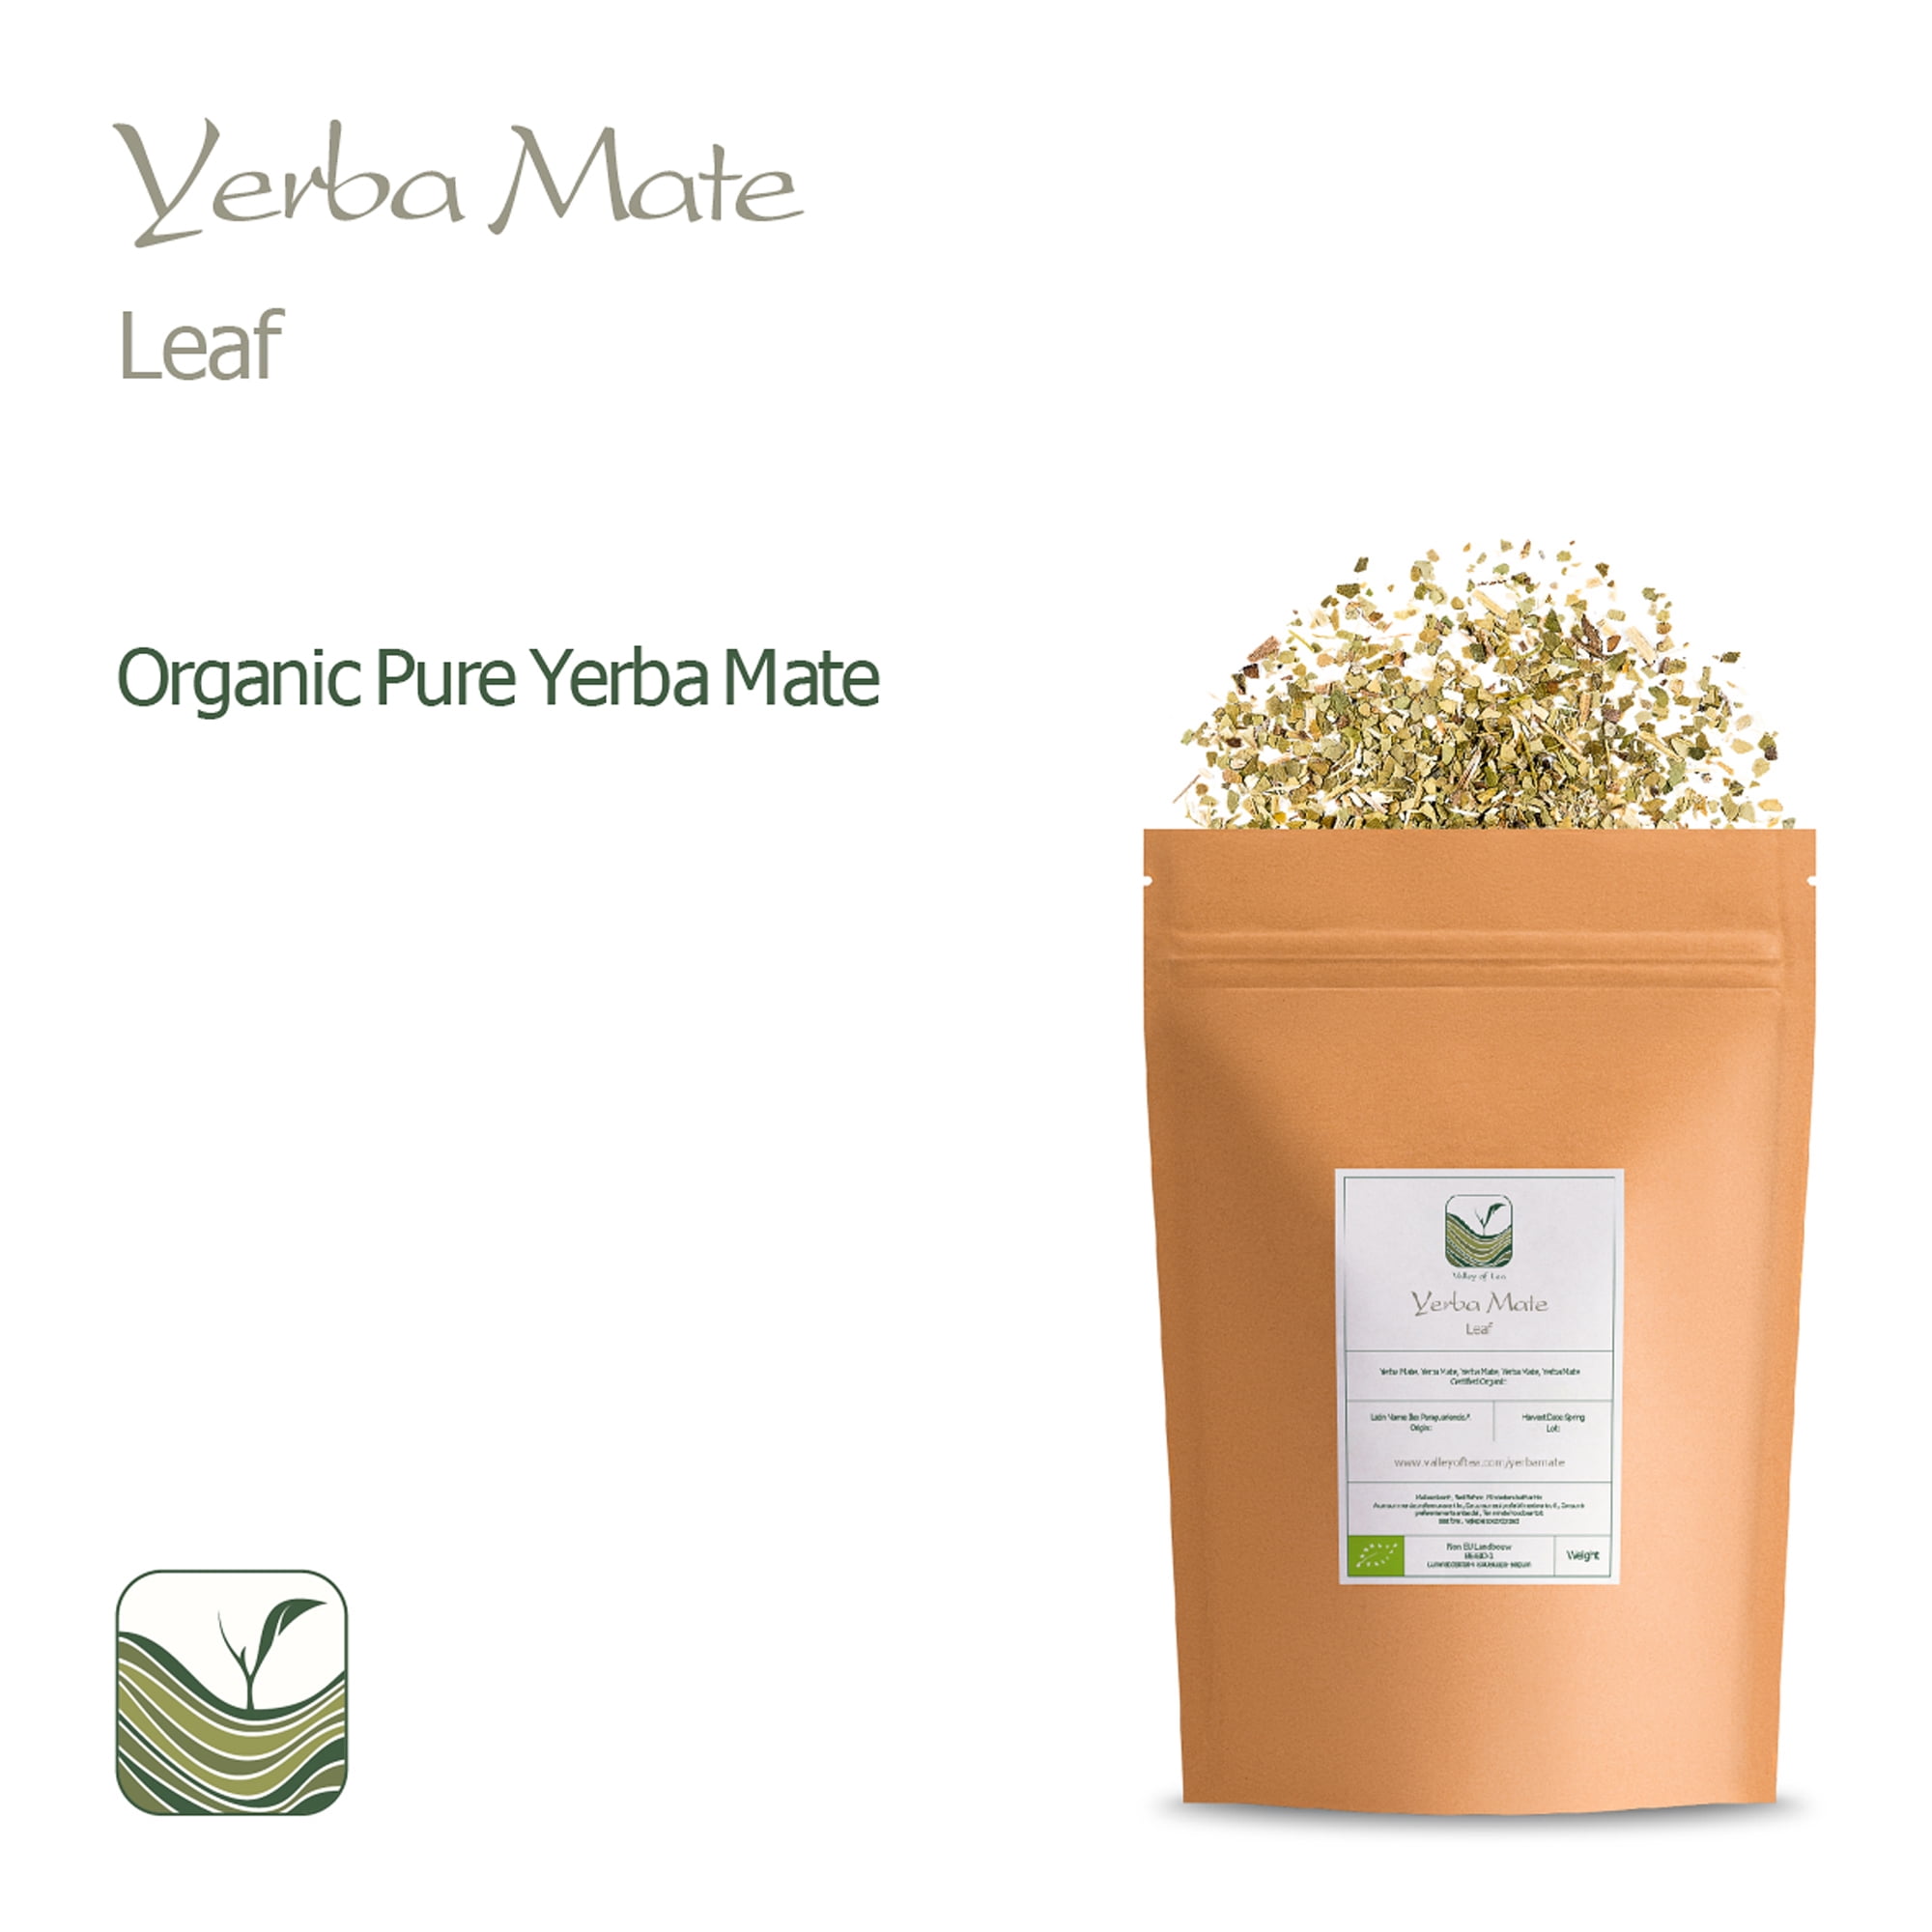 Organic Yerba Mate (Bio) from South America - Pequeña Sudamérica